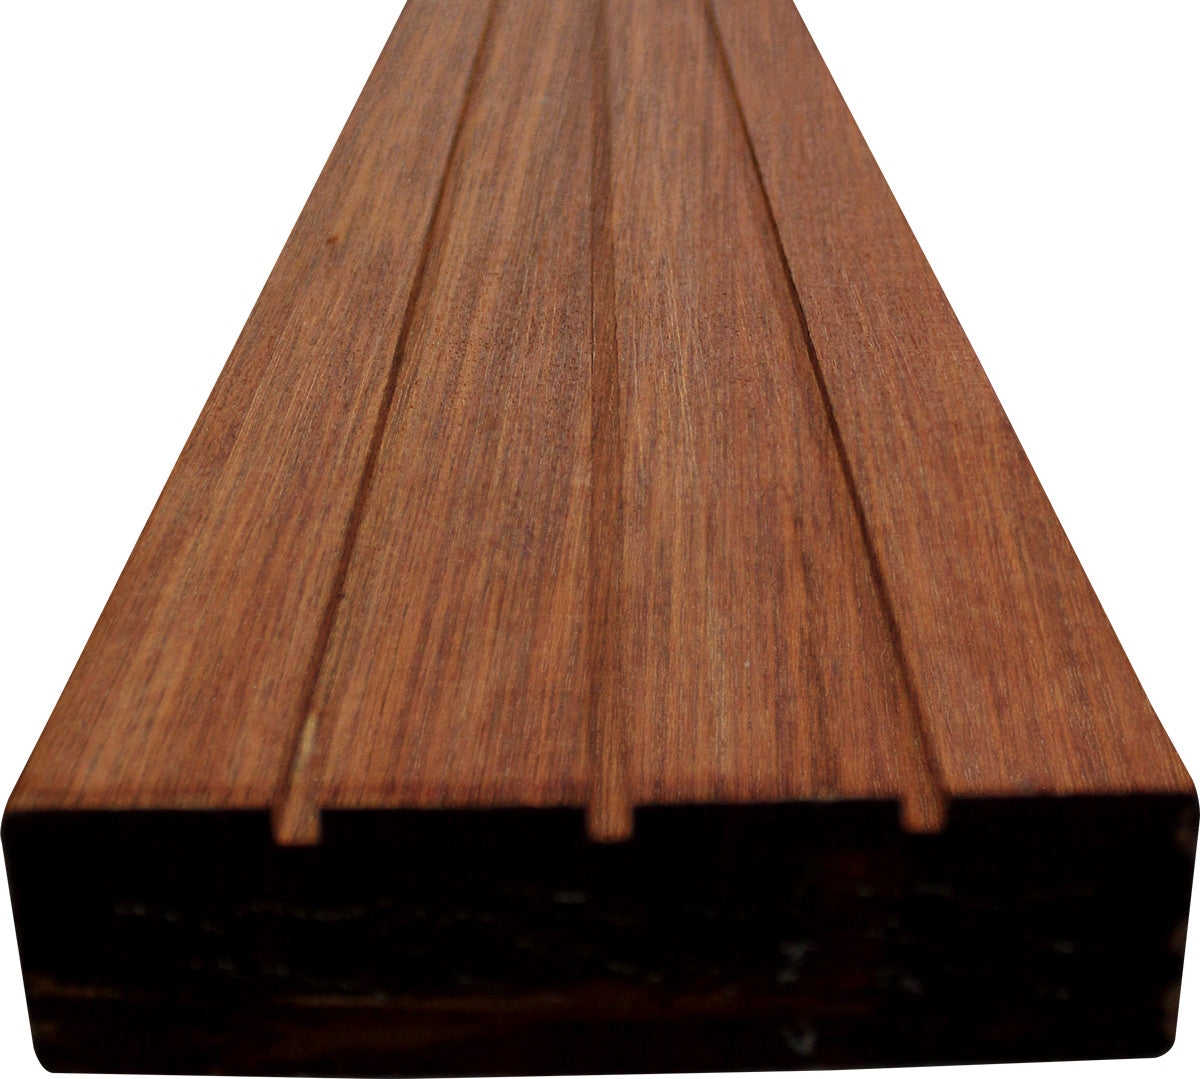 2 x 6 Mahogany (Red Balau) Wood